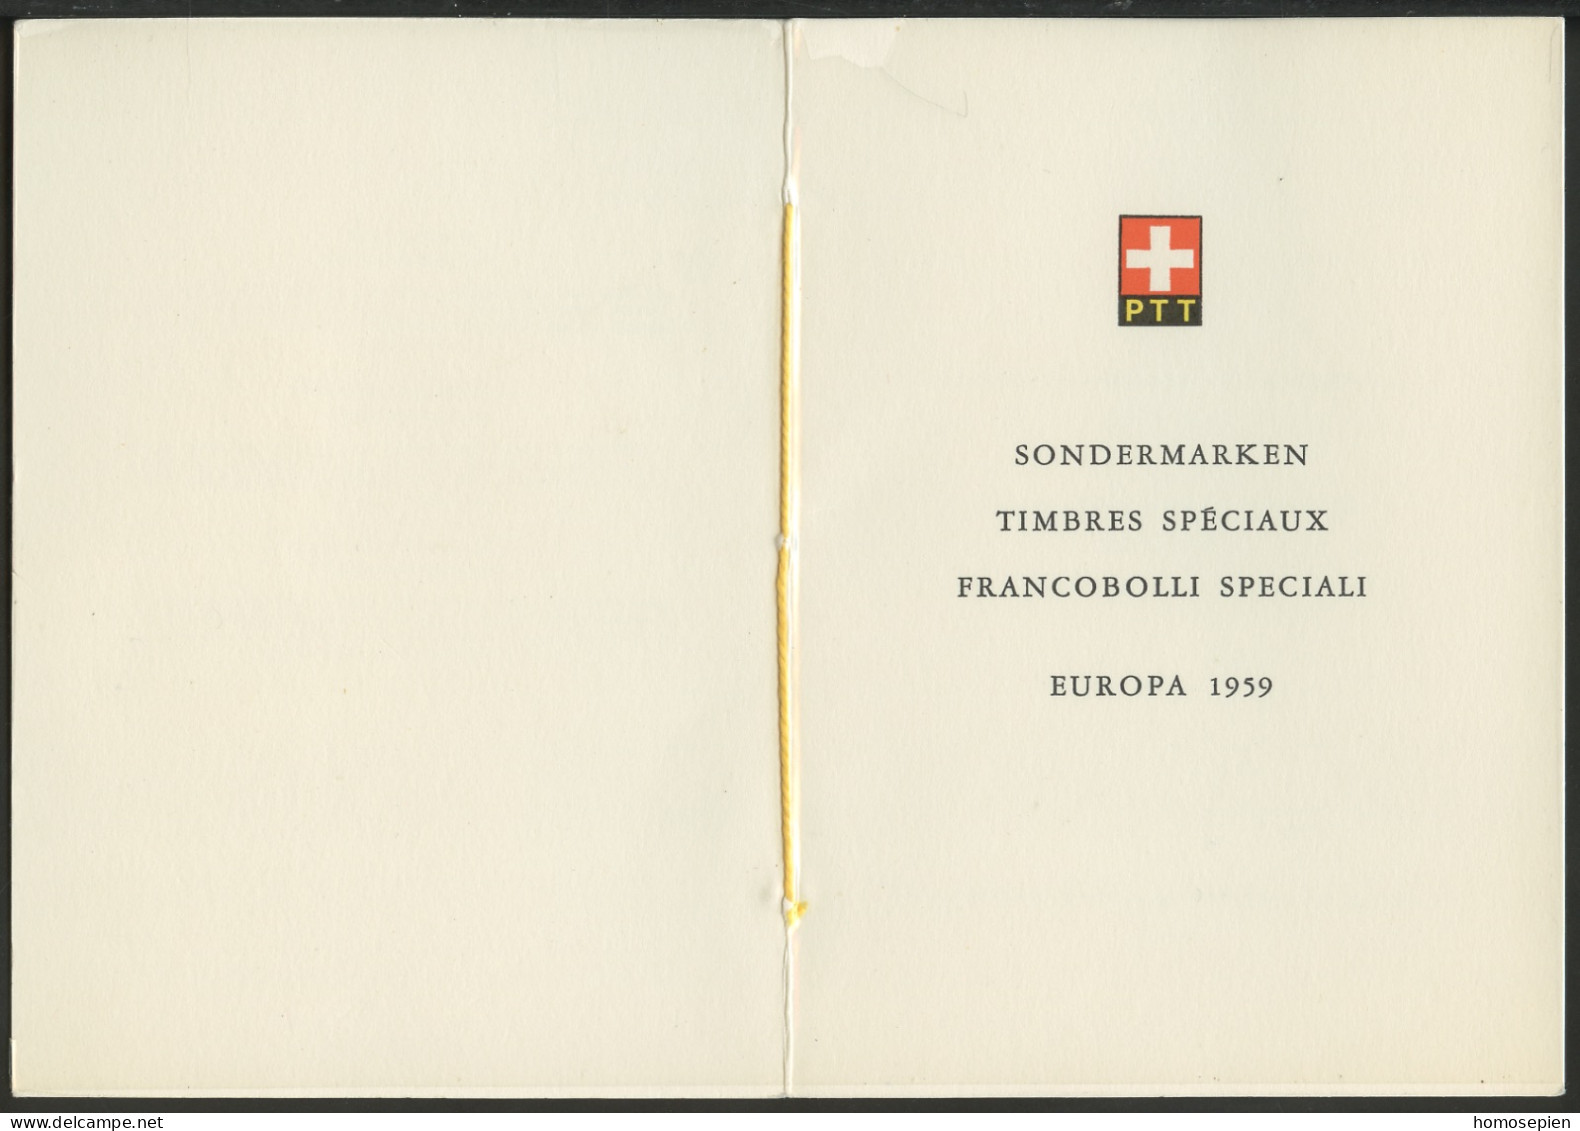 Europa CEPT 1959 Suisse - Switzerland - Schweiz Livret Y&T N°630 à 631 - Michel N°679 à 680 (o) - 1959